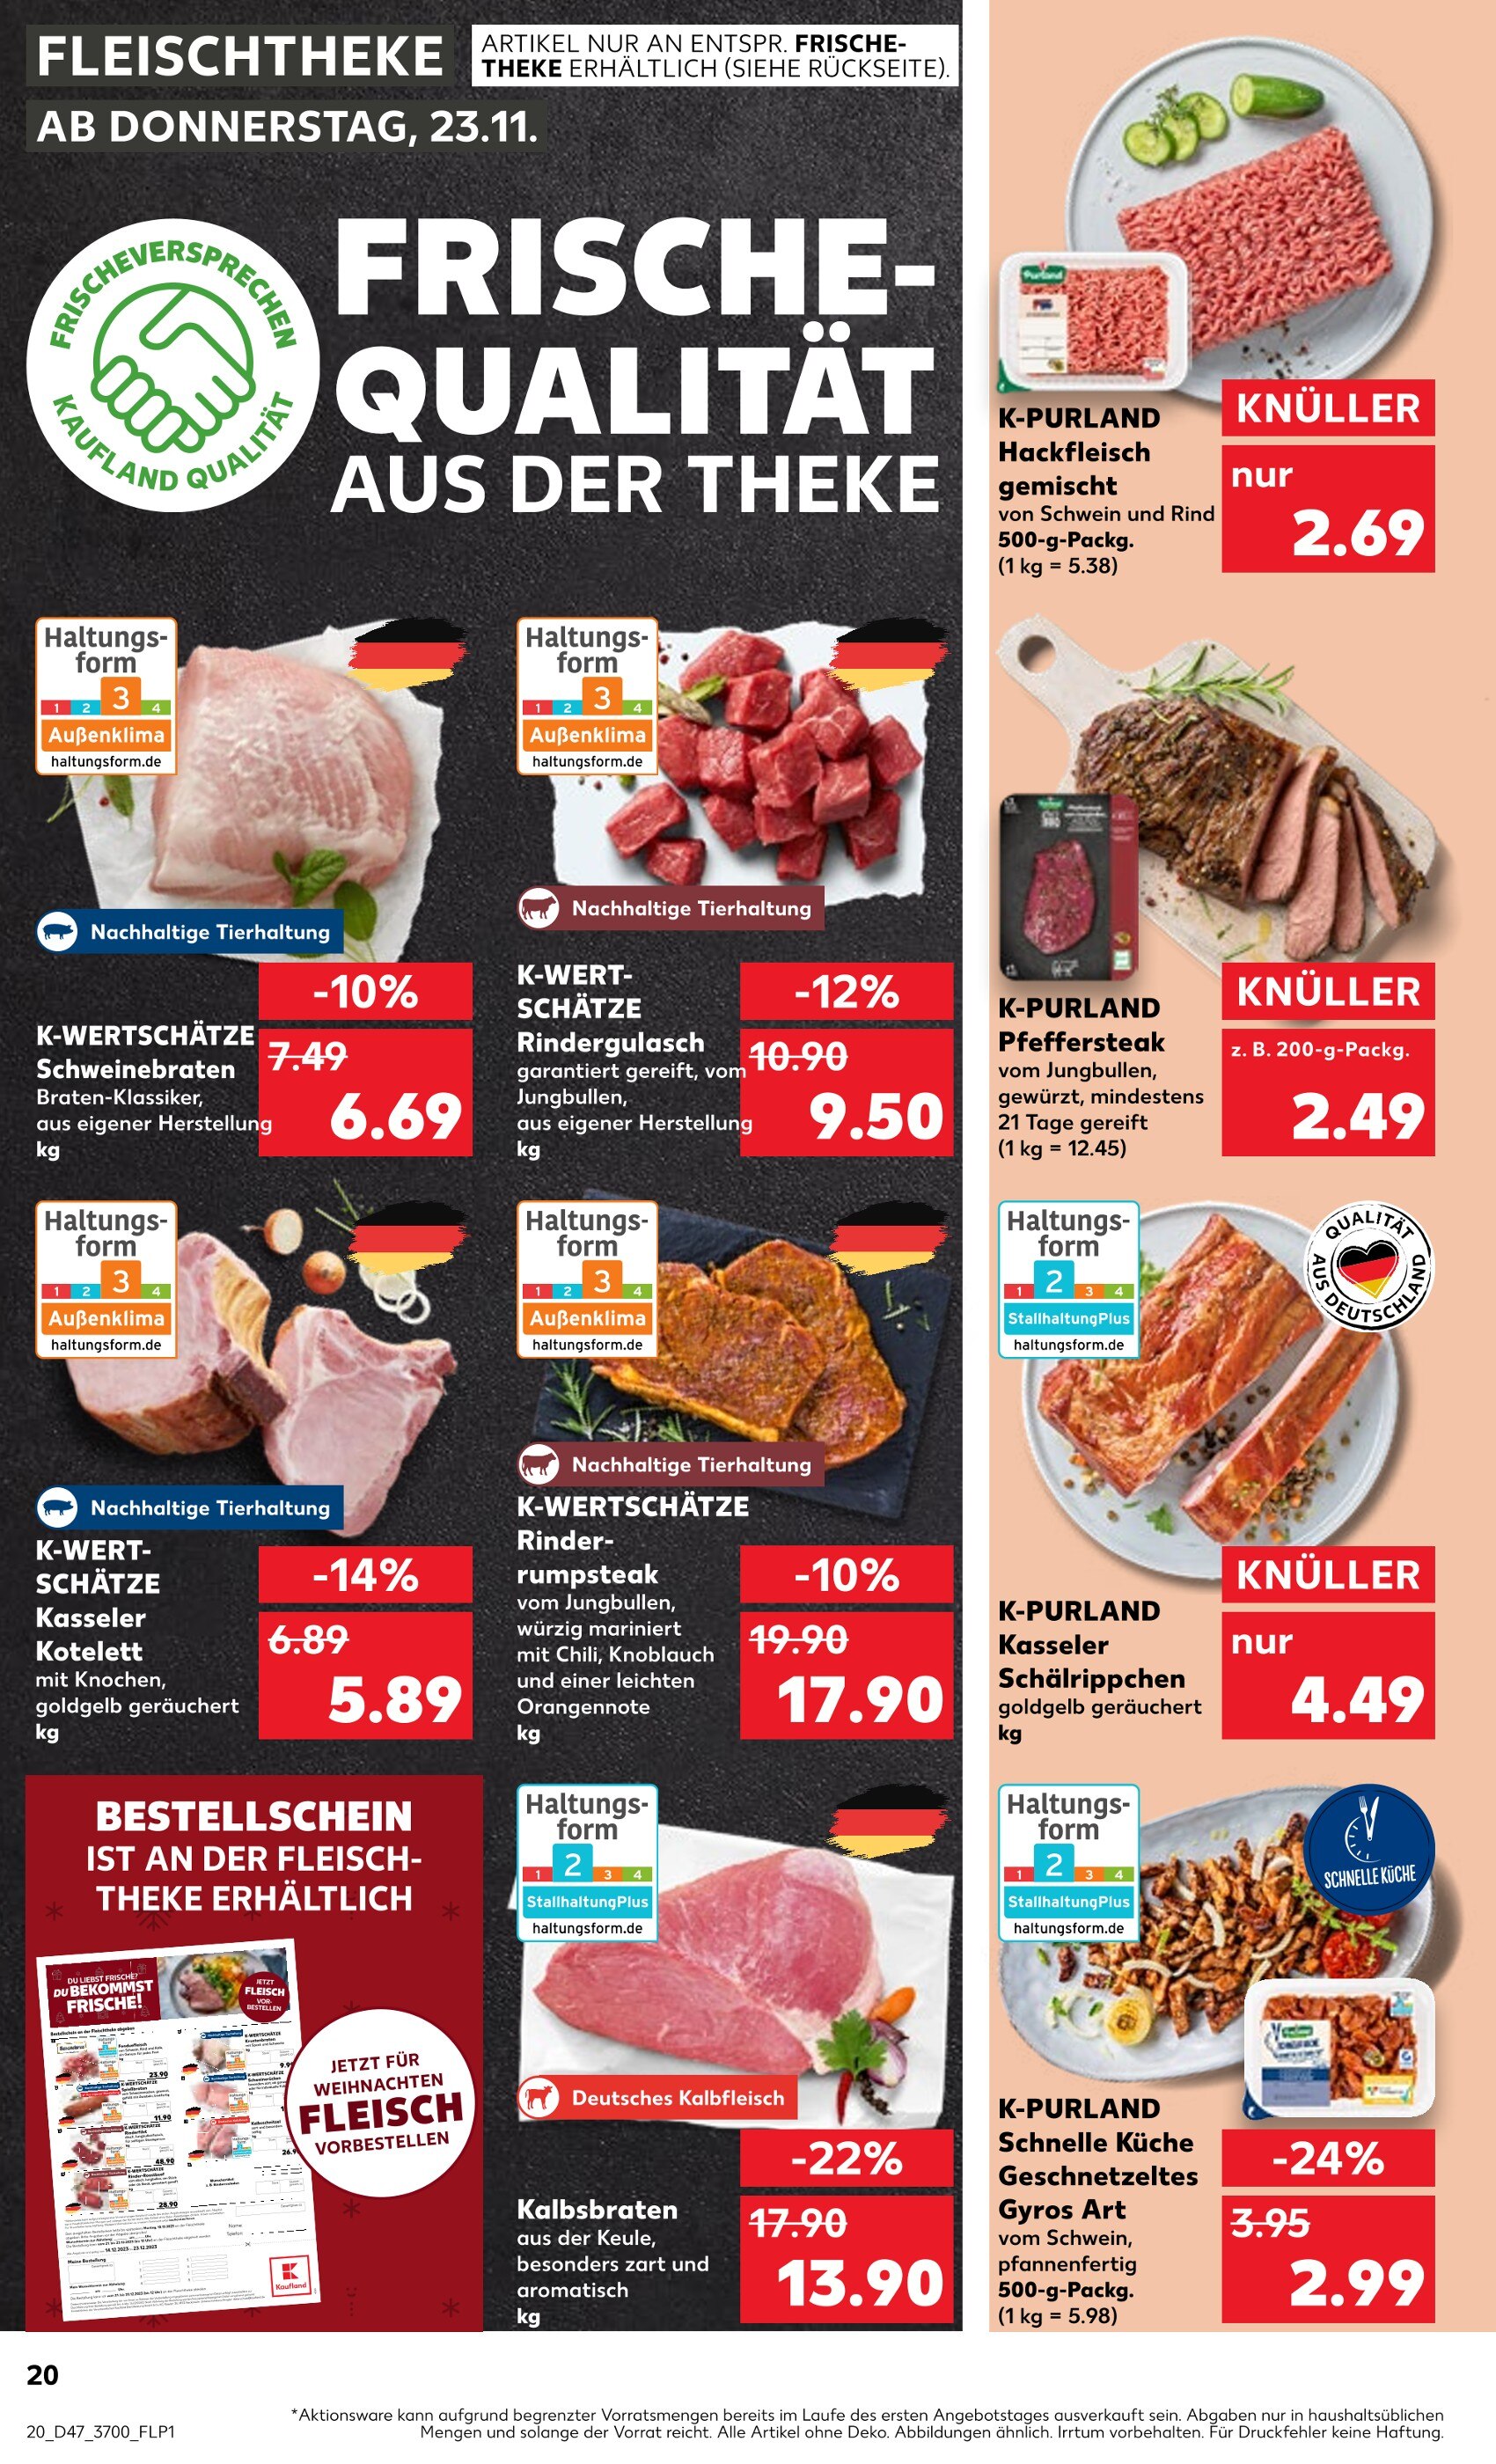 Steak Angebote in Rostock - jetzt günstig kaufen! 🔥